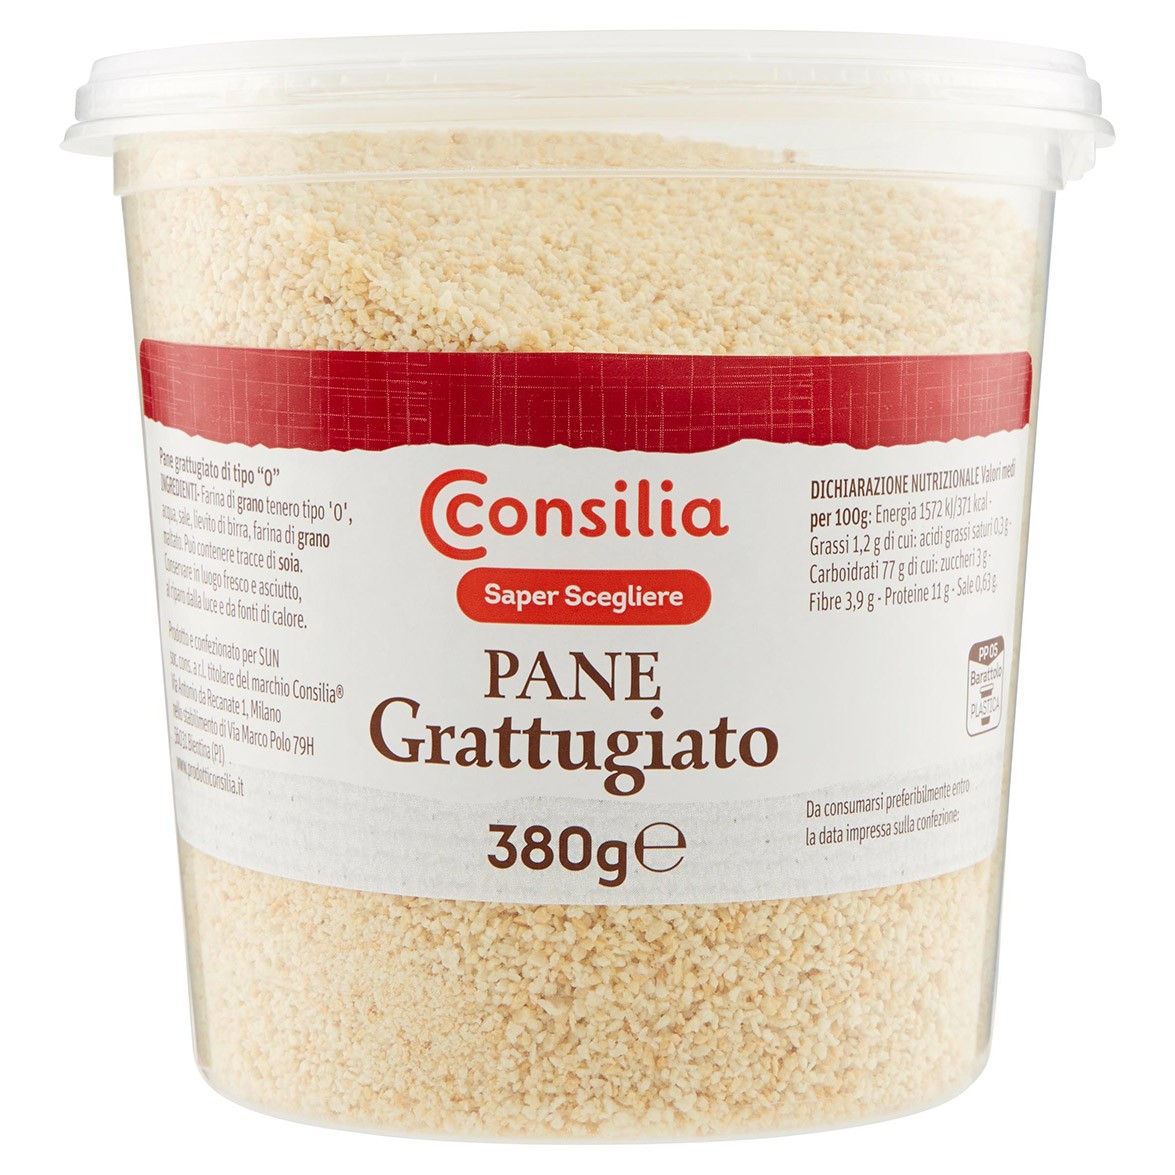 GASTREGHINI – Pane grattugiato KG. 1 – Tuyù